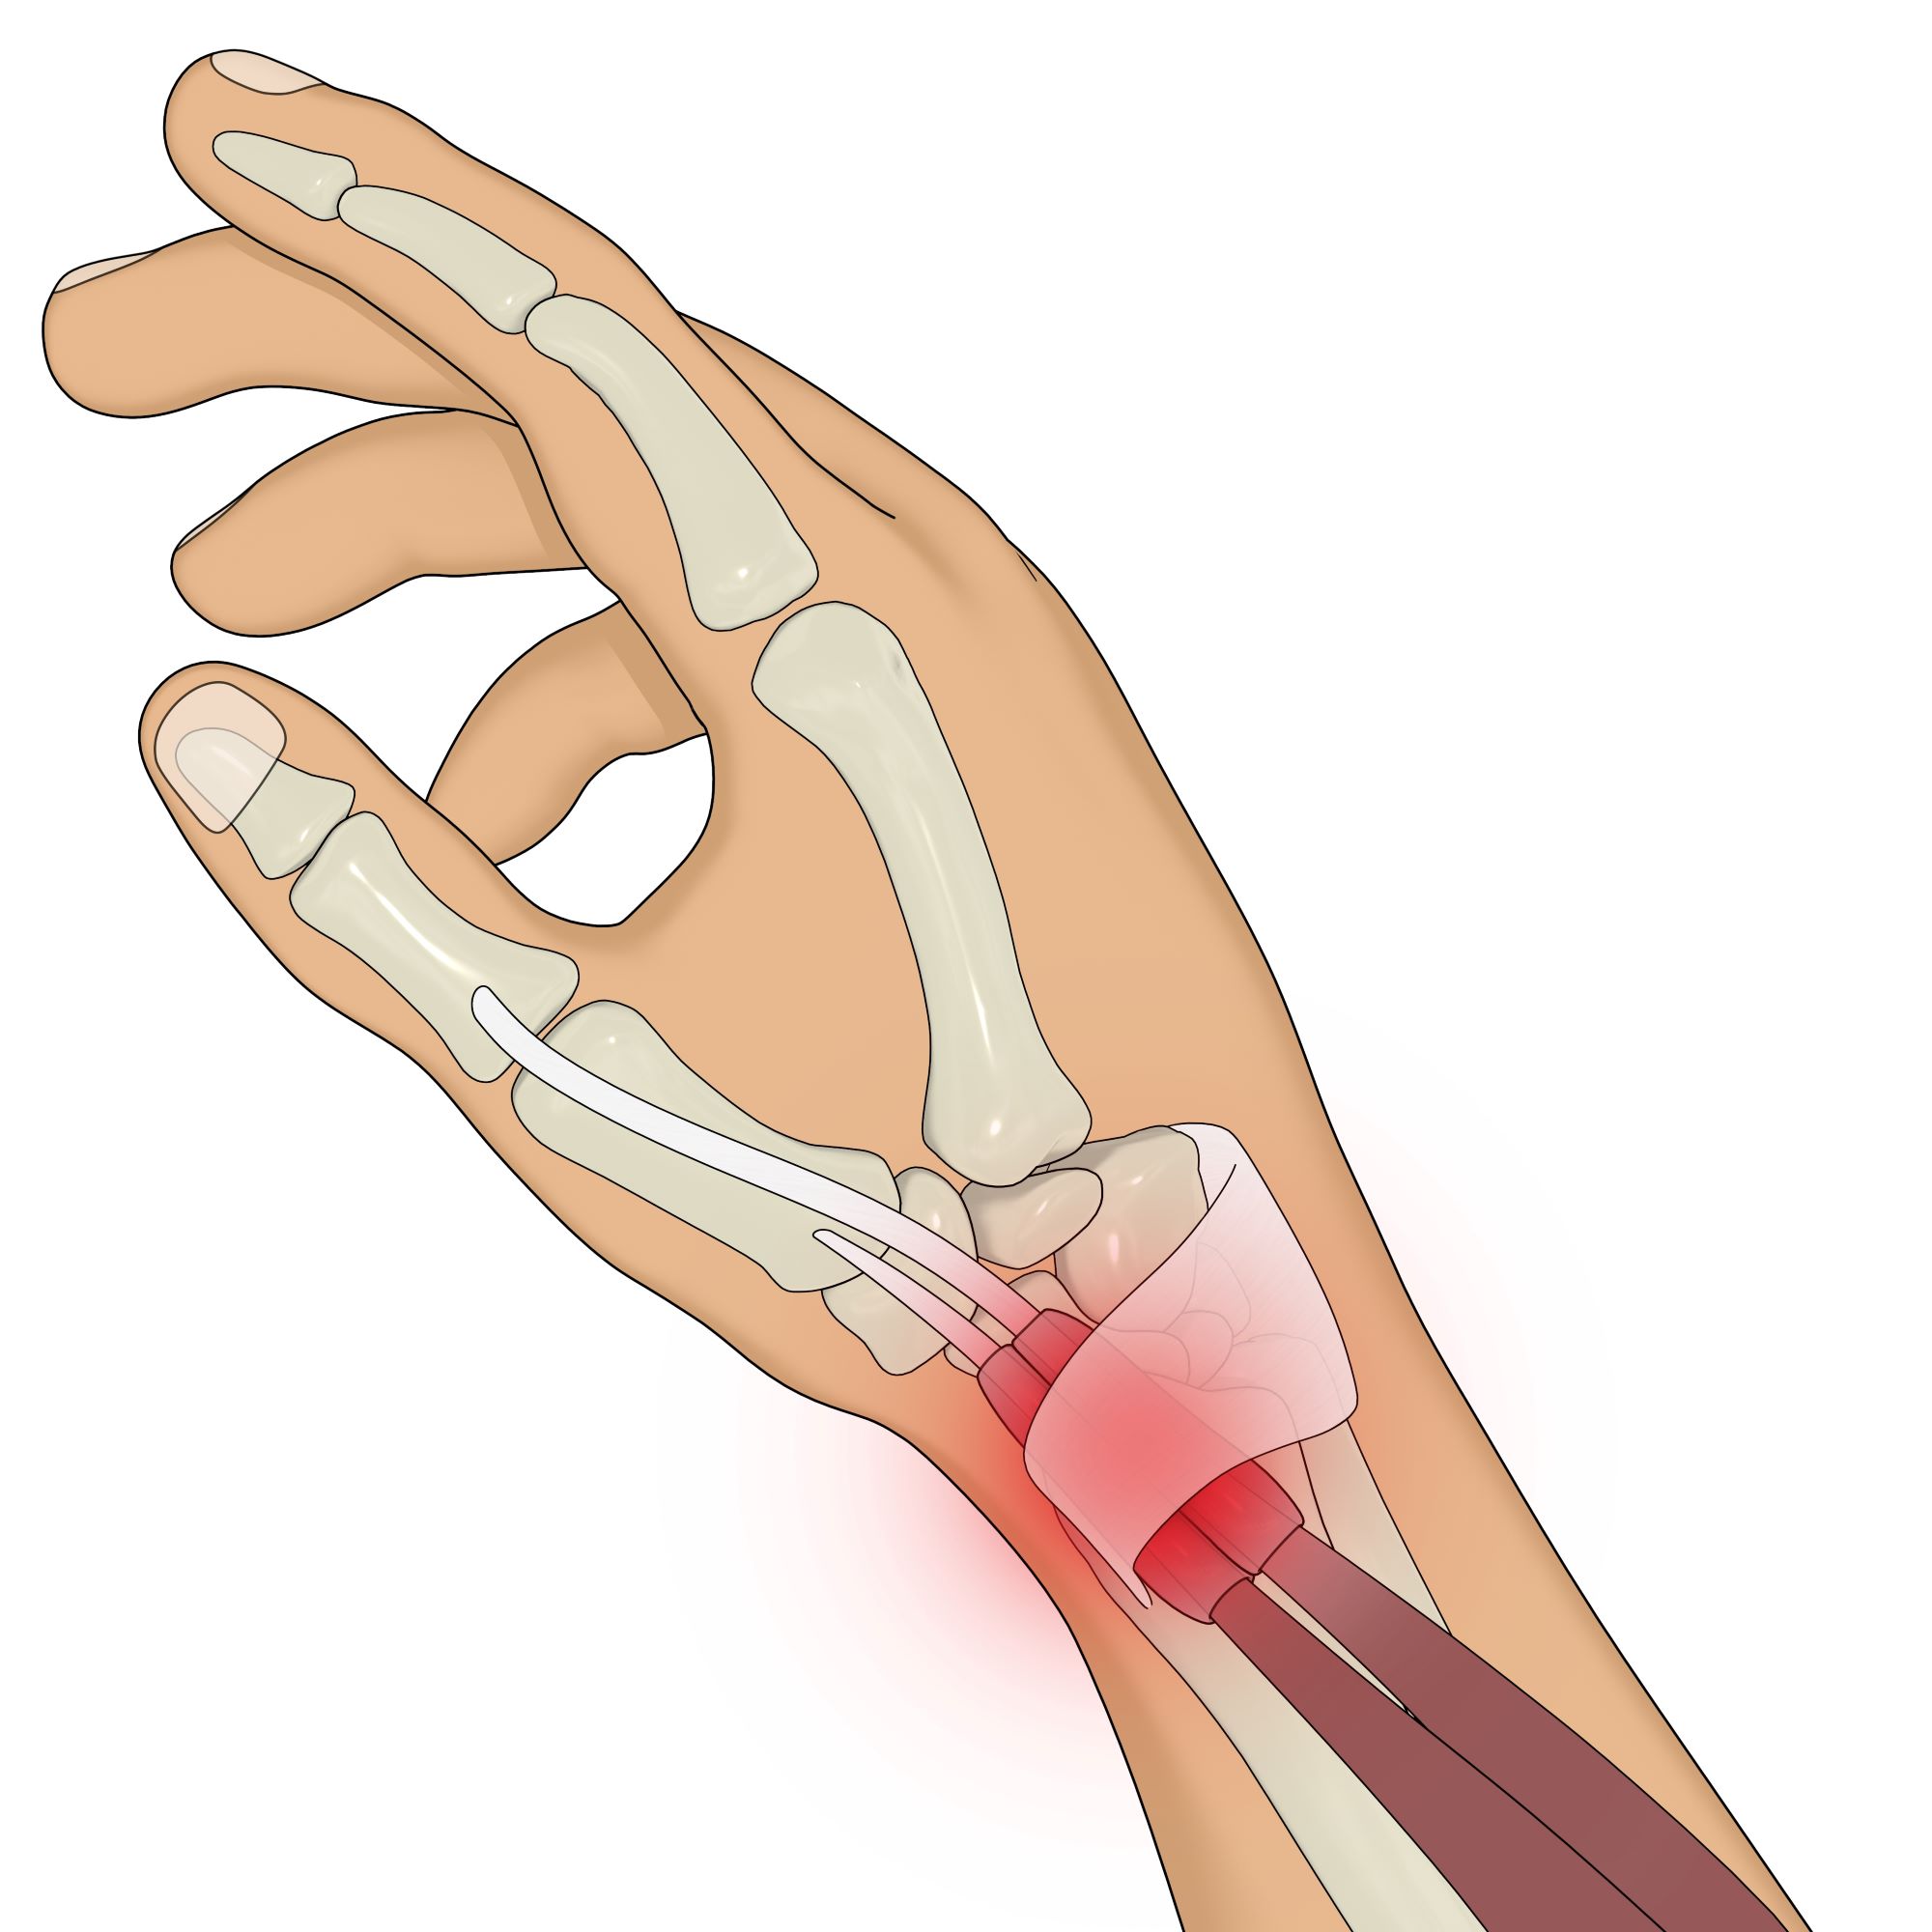 Tendinite du poignet : Symptômes, causes et traitements